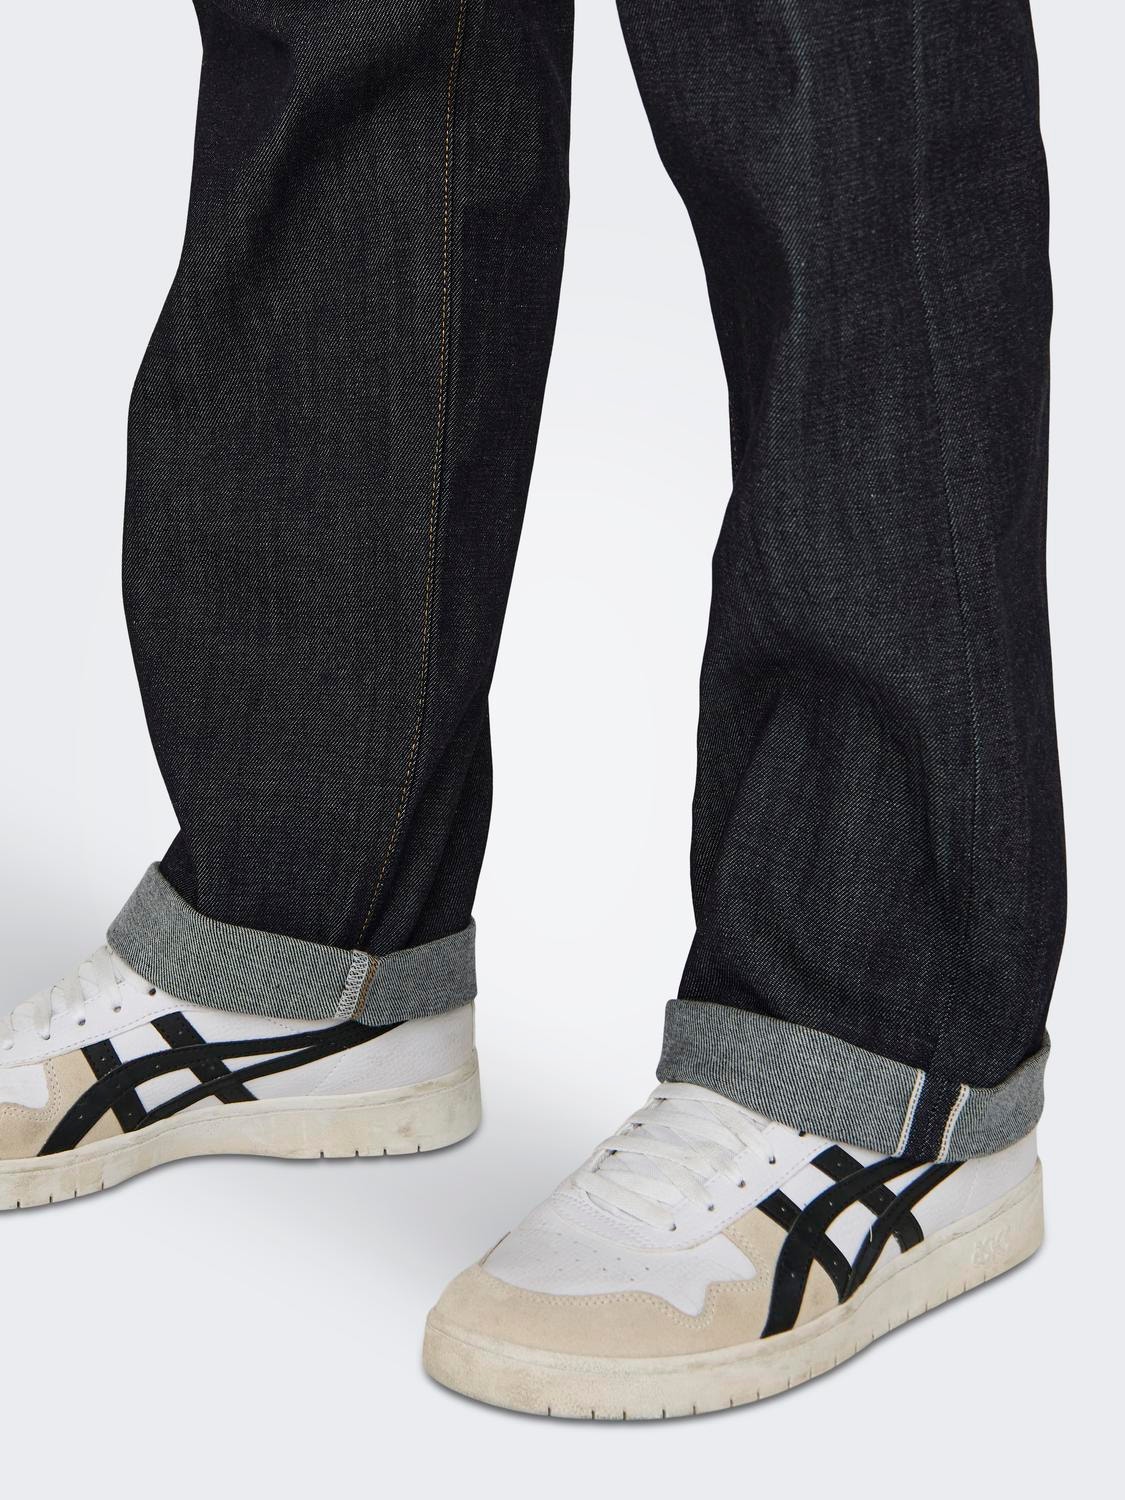 ONLY & SONS Gerade geschnitten Mittlere Taille Jeans -Dark Blue Denim - 22028314